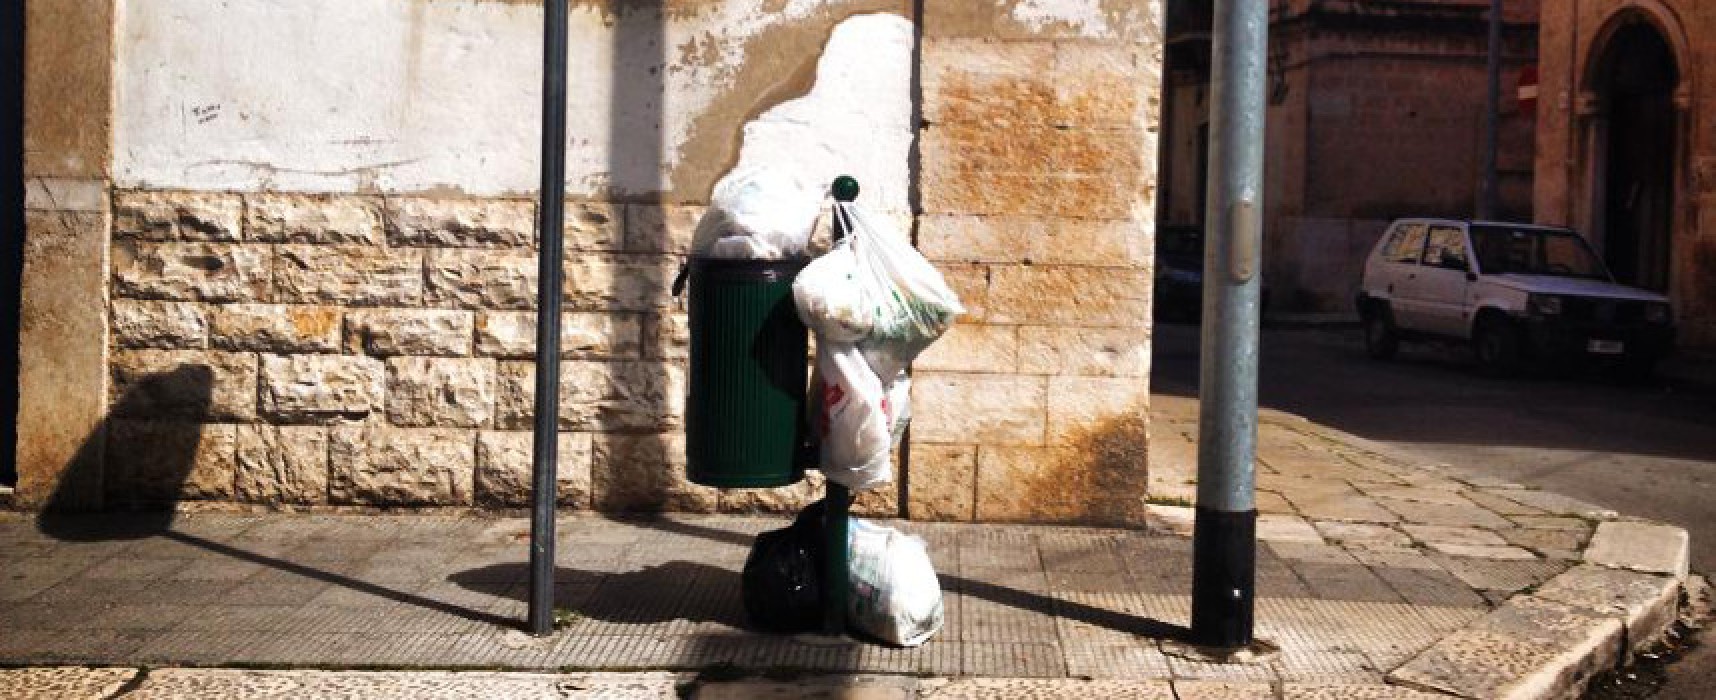 “Installazioni di inciviltà” ovvero rifiuti mal conferiti in via San Lorenzo